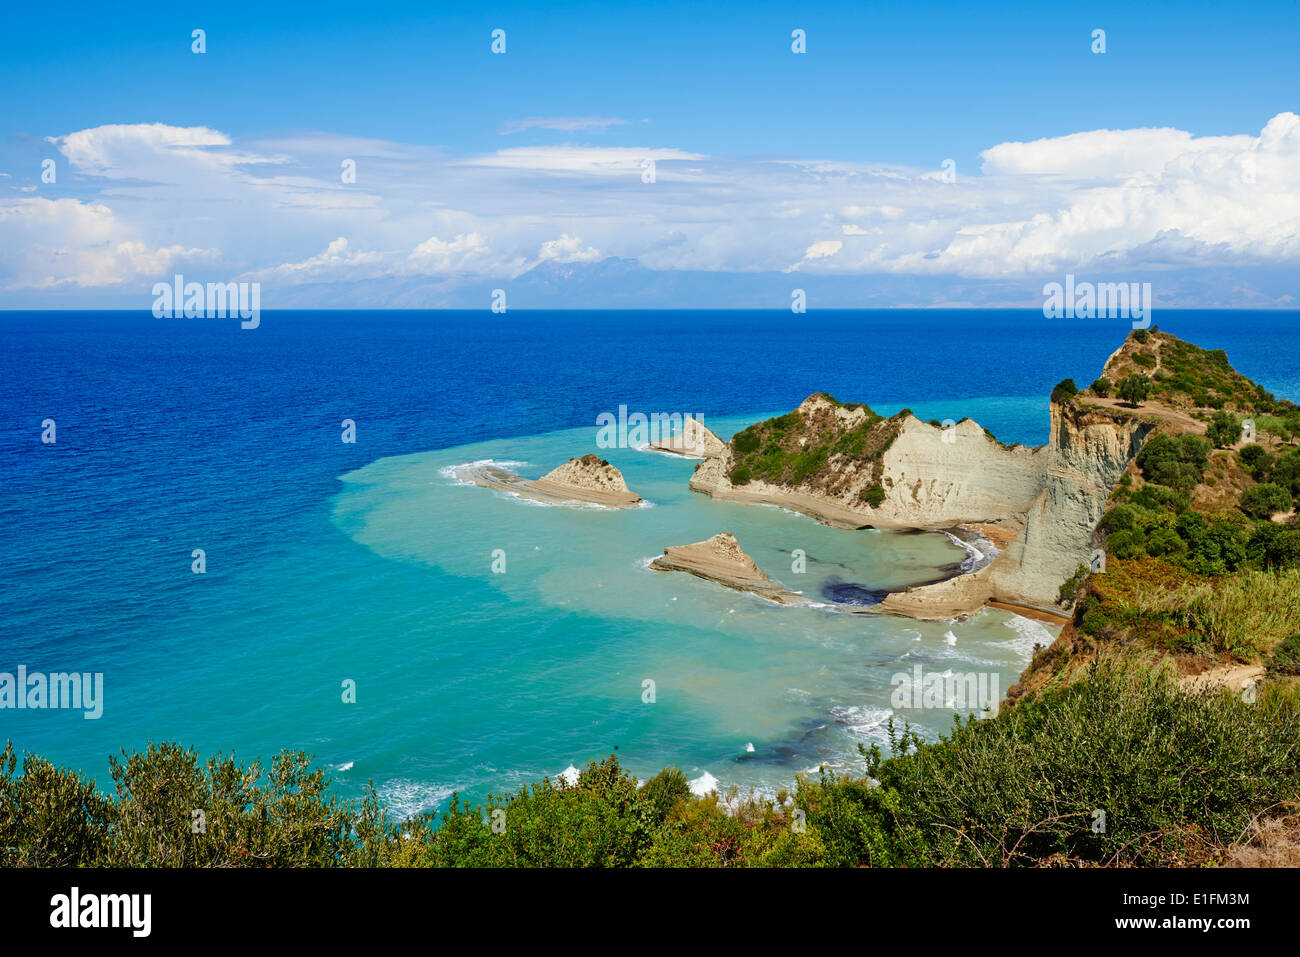 Griechenland, ionische Insel, Insel Korfu, Kap Drastis in der Nähe von Sidari Dorf Stockfoto